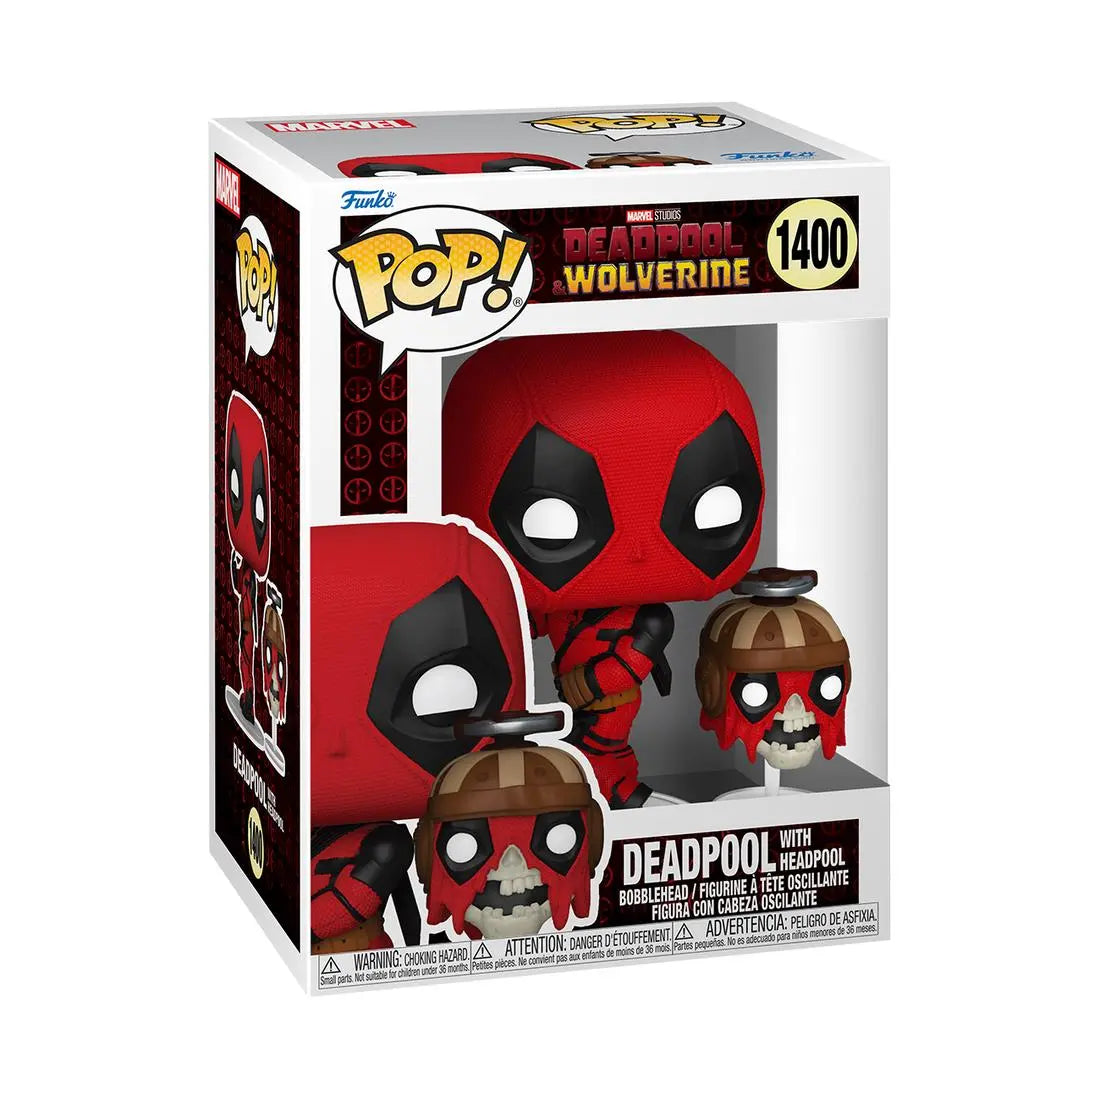 Funko Pop! Marvel Deadpool & Wolverine 1400 Deadpool with Headpool Funko